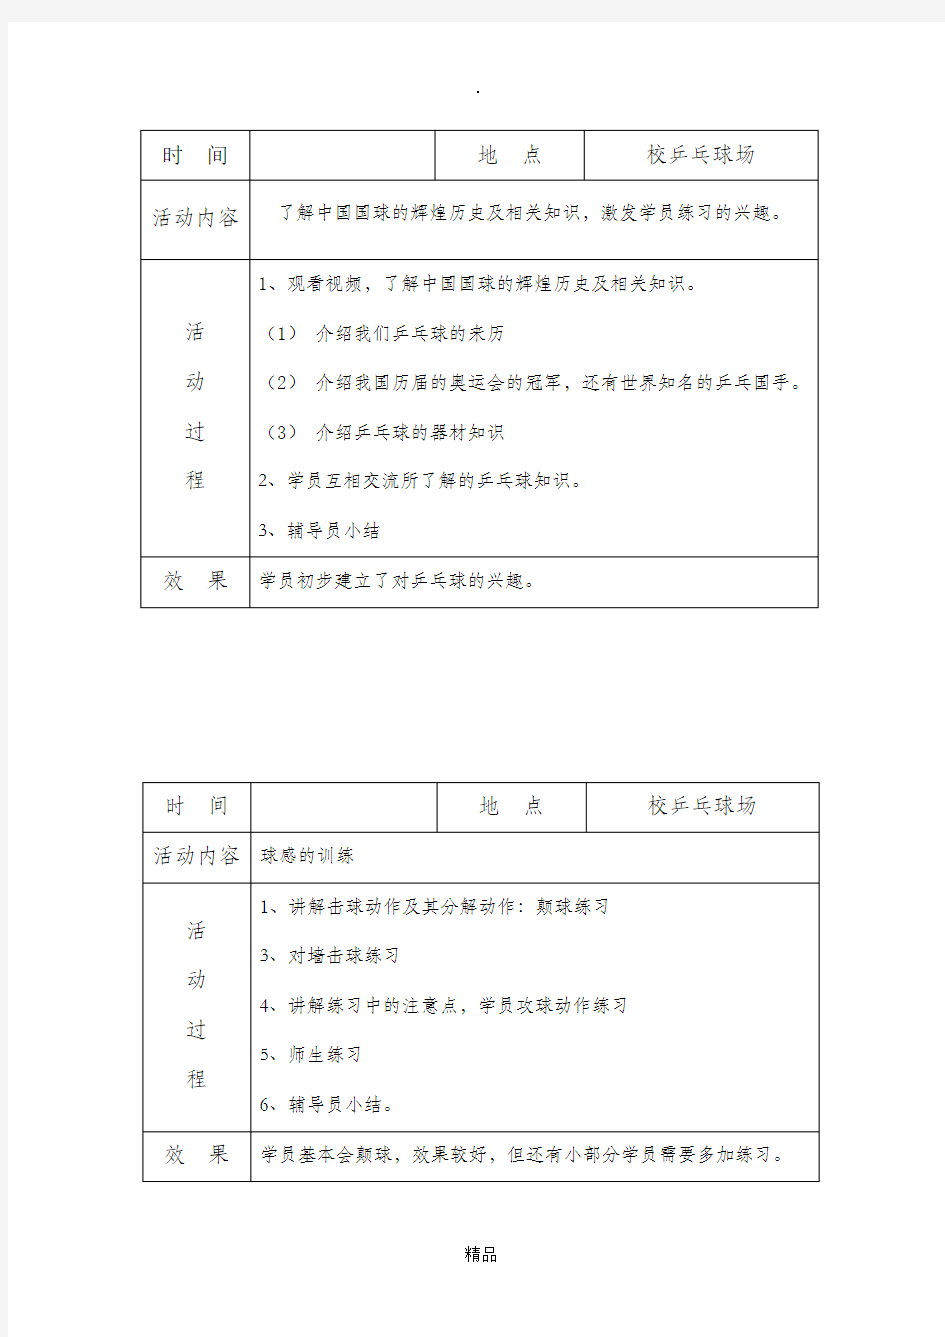 乡村学校少年宫_乒乓球_项目活动记录